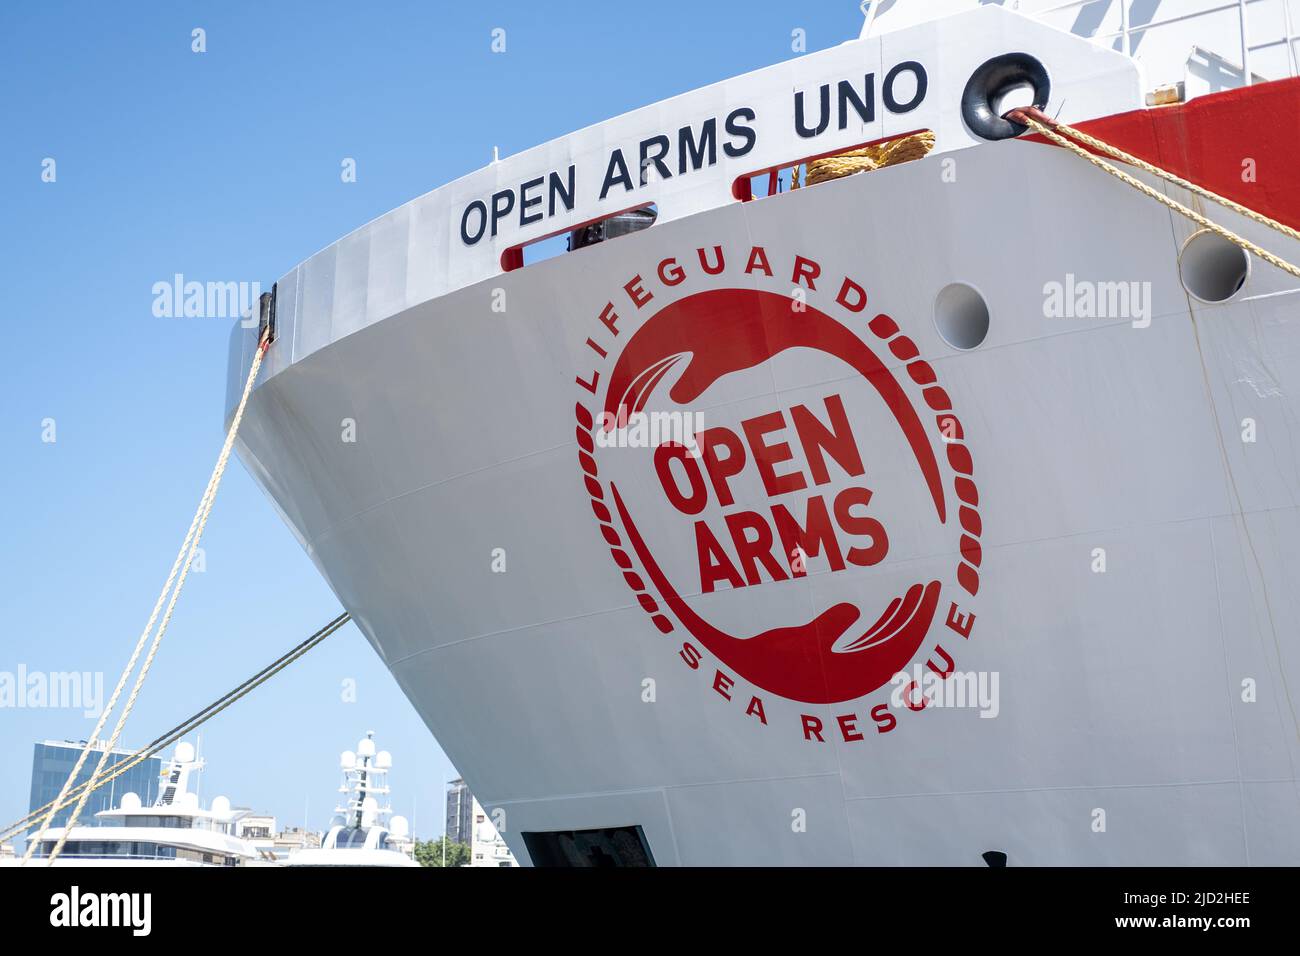 Proactiva Open Arms navire de recherche et de sauvetage ancré à Barcelone, Espagne. Banque D'Images